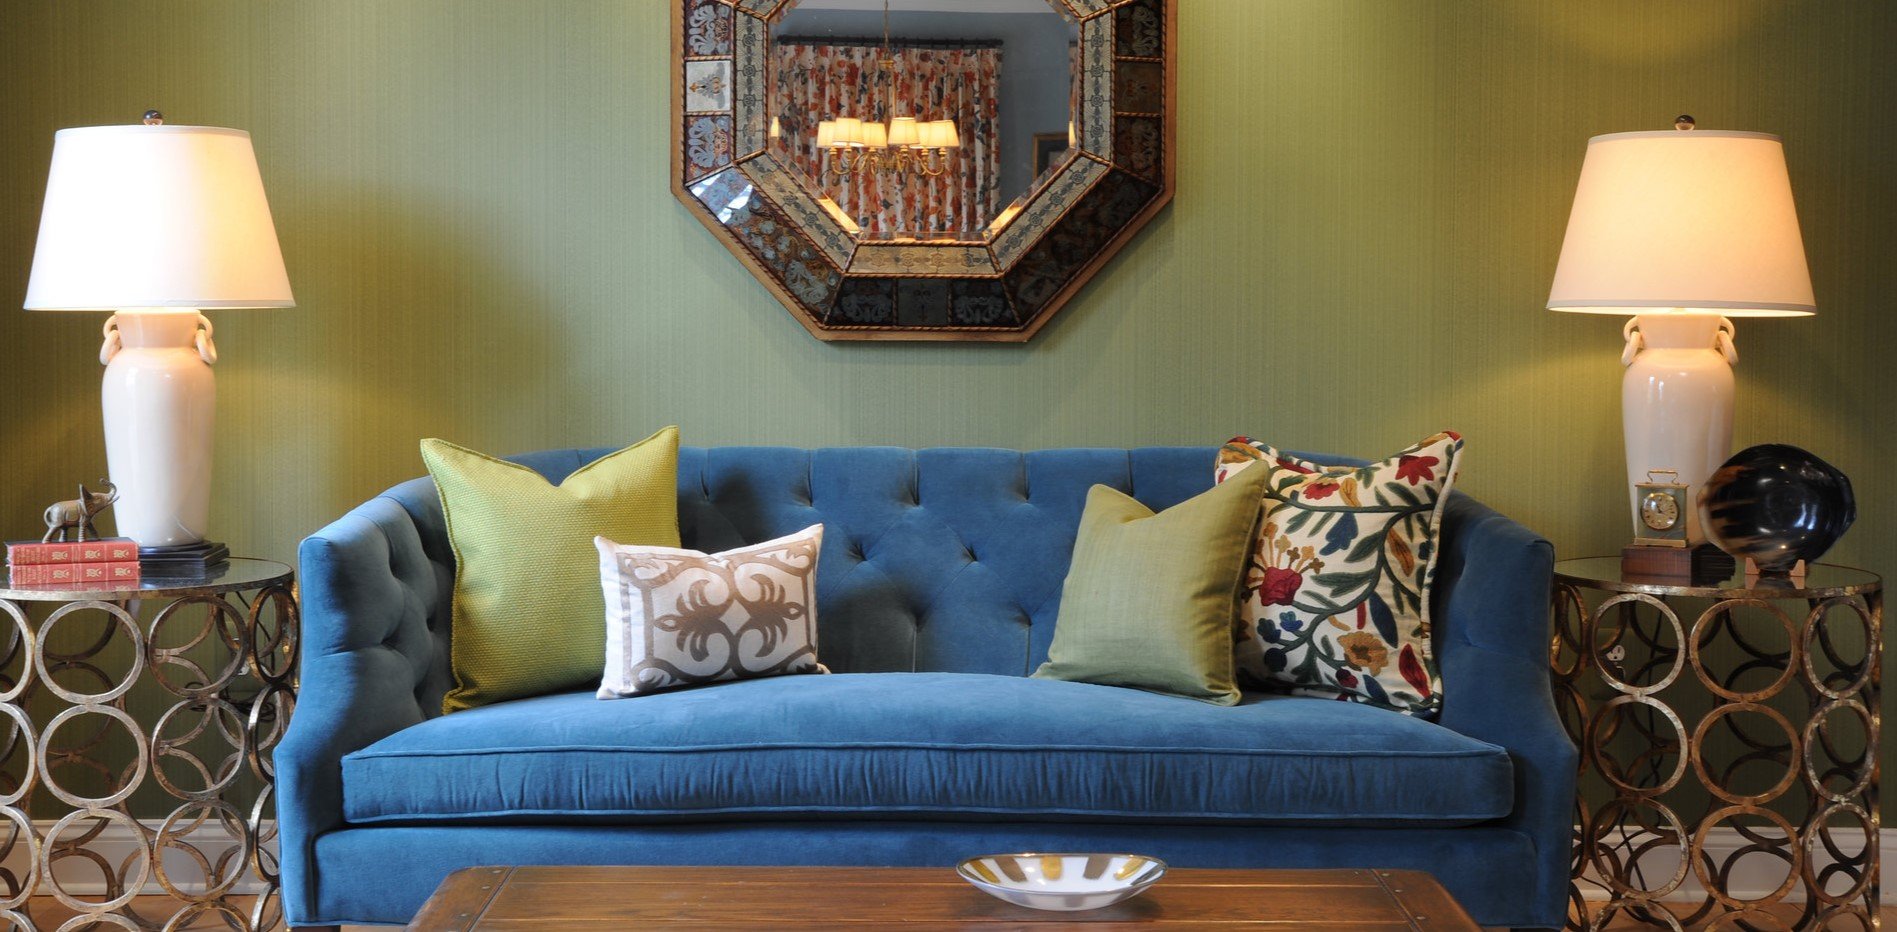 Сине-зеленый диван в интерьере